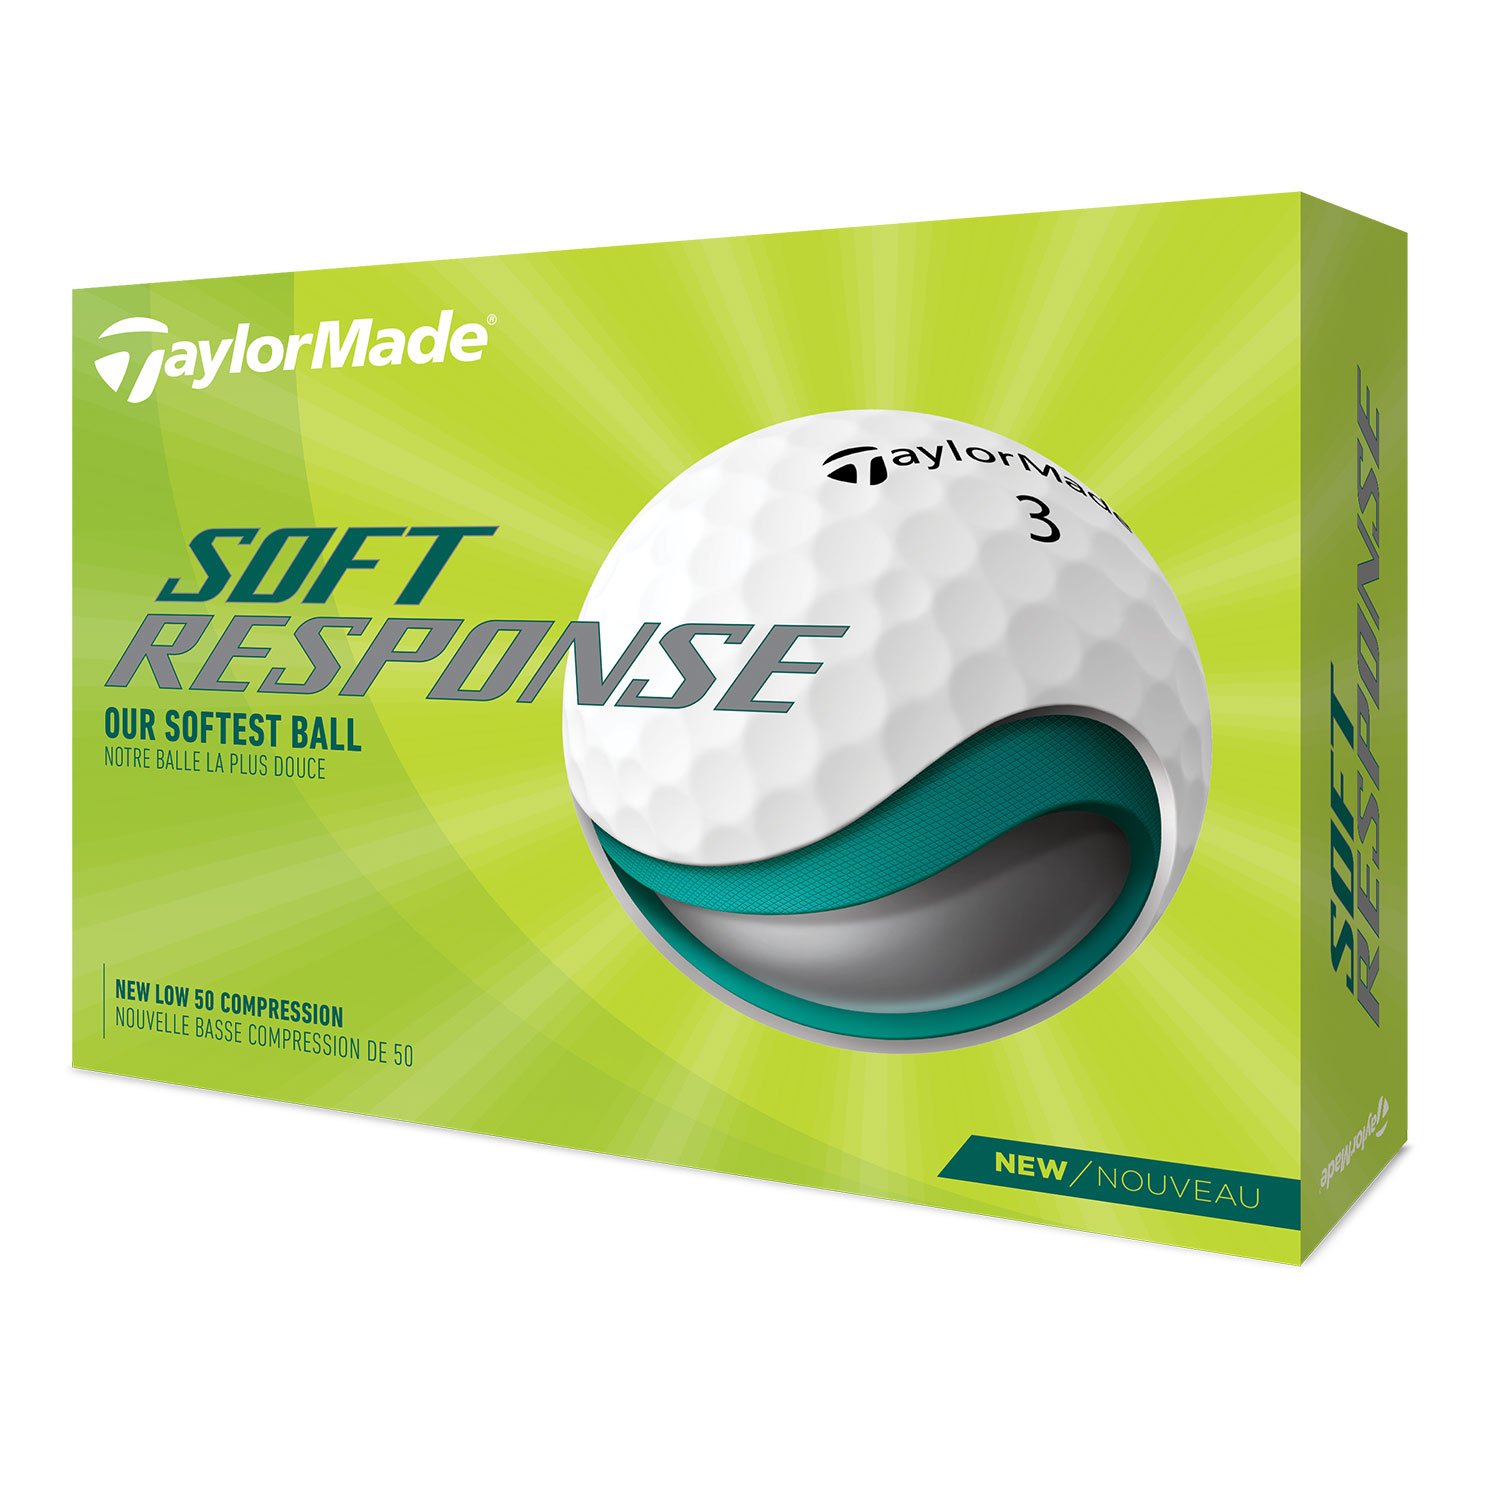 Brug TaylorMade Soft Response Golfbolde til en forbedret oplevelse